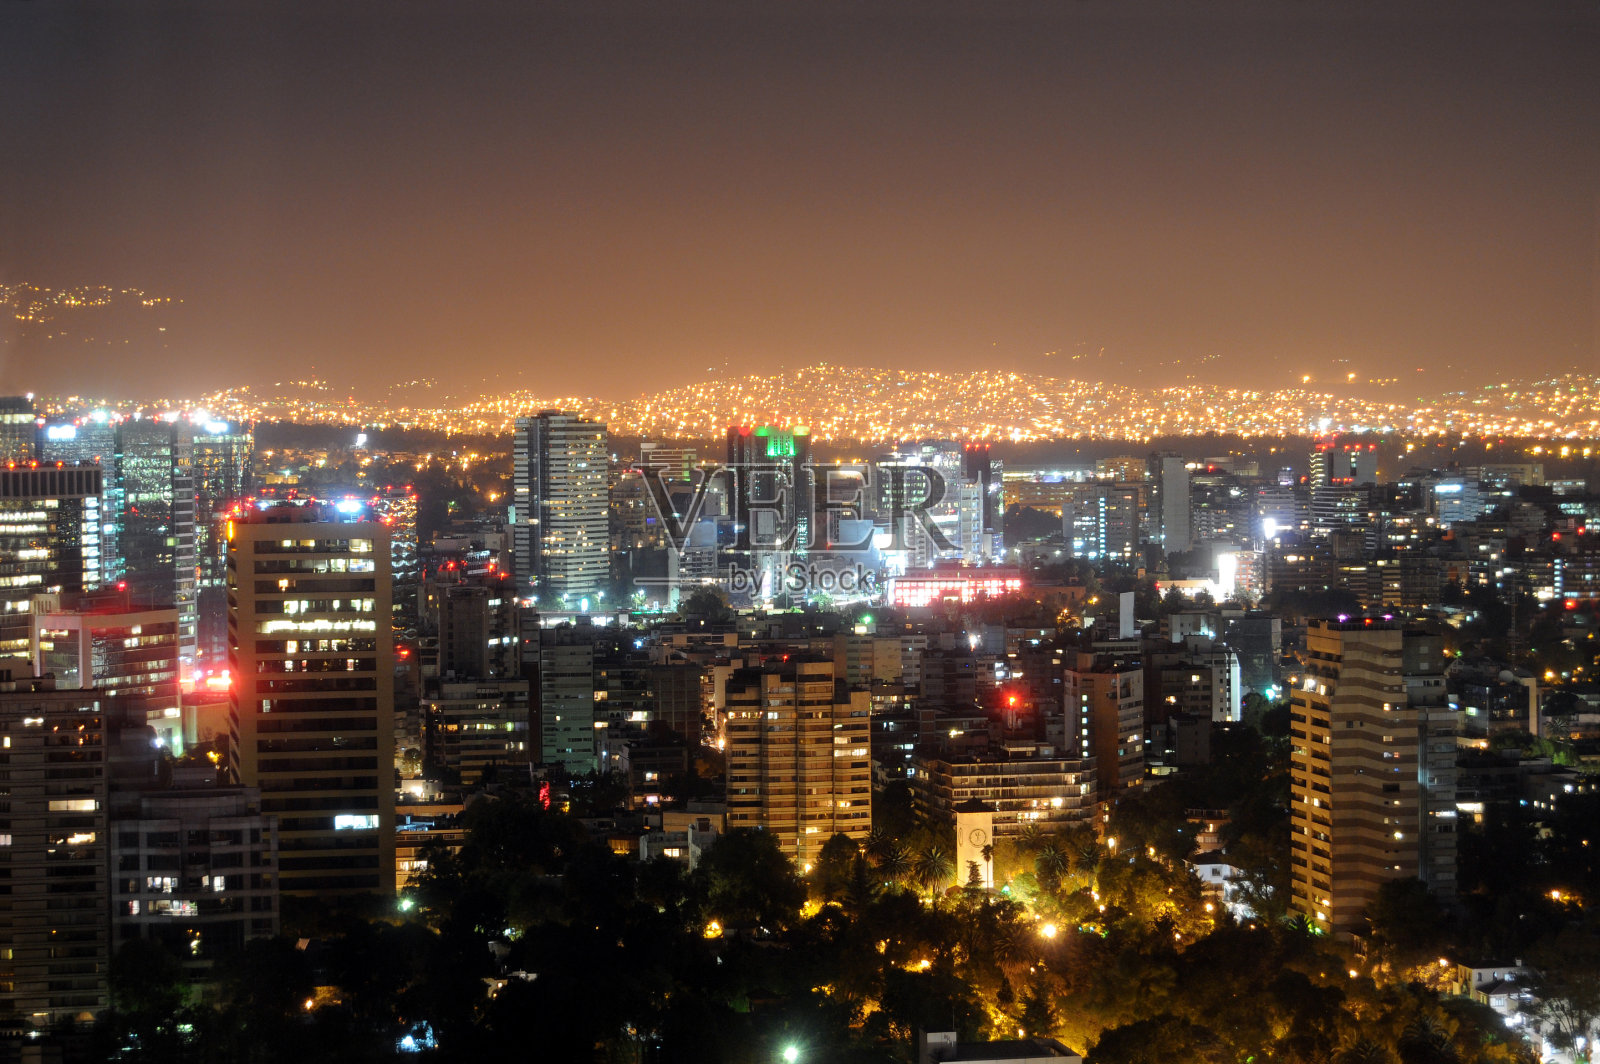 墨西哥城夜晚灯火通明照片摄影图片